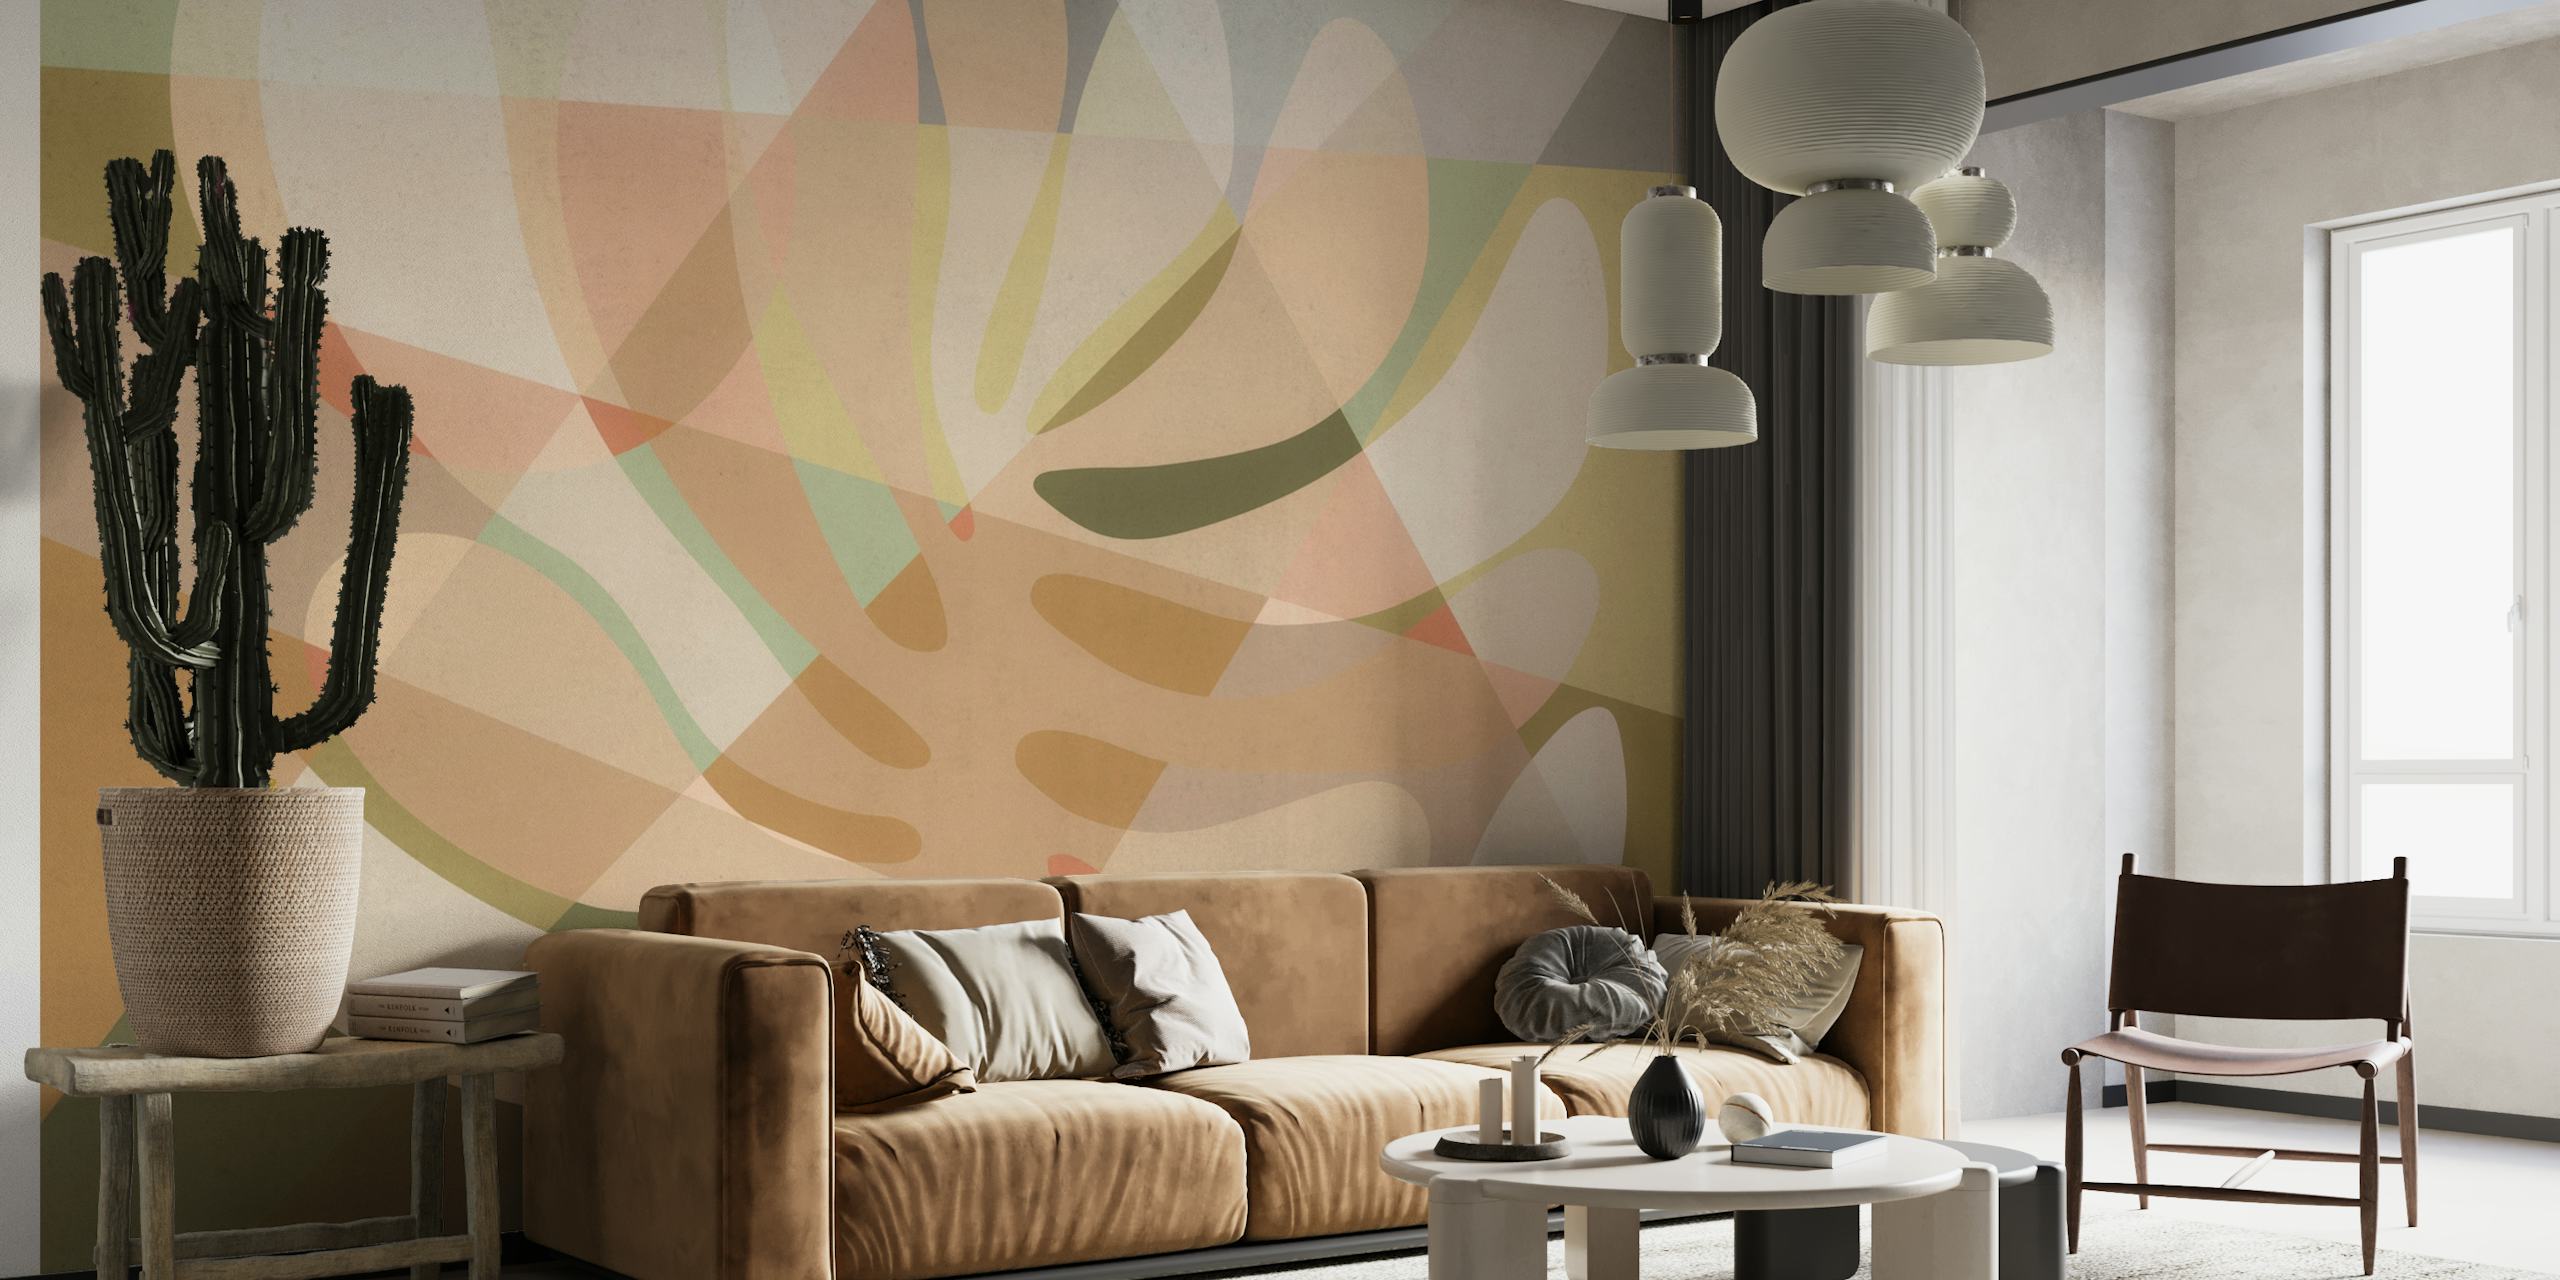 Abstraktes Baum-Wandbild in warmen Beige-, Braun- und Cremetönen